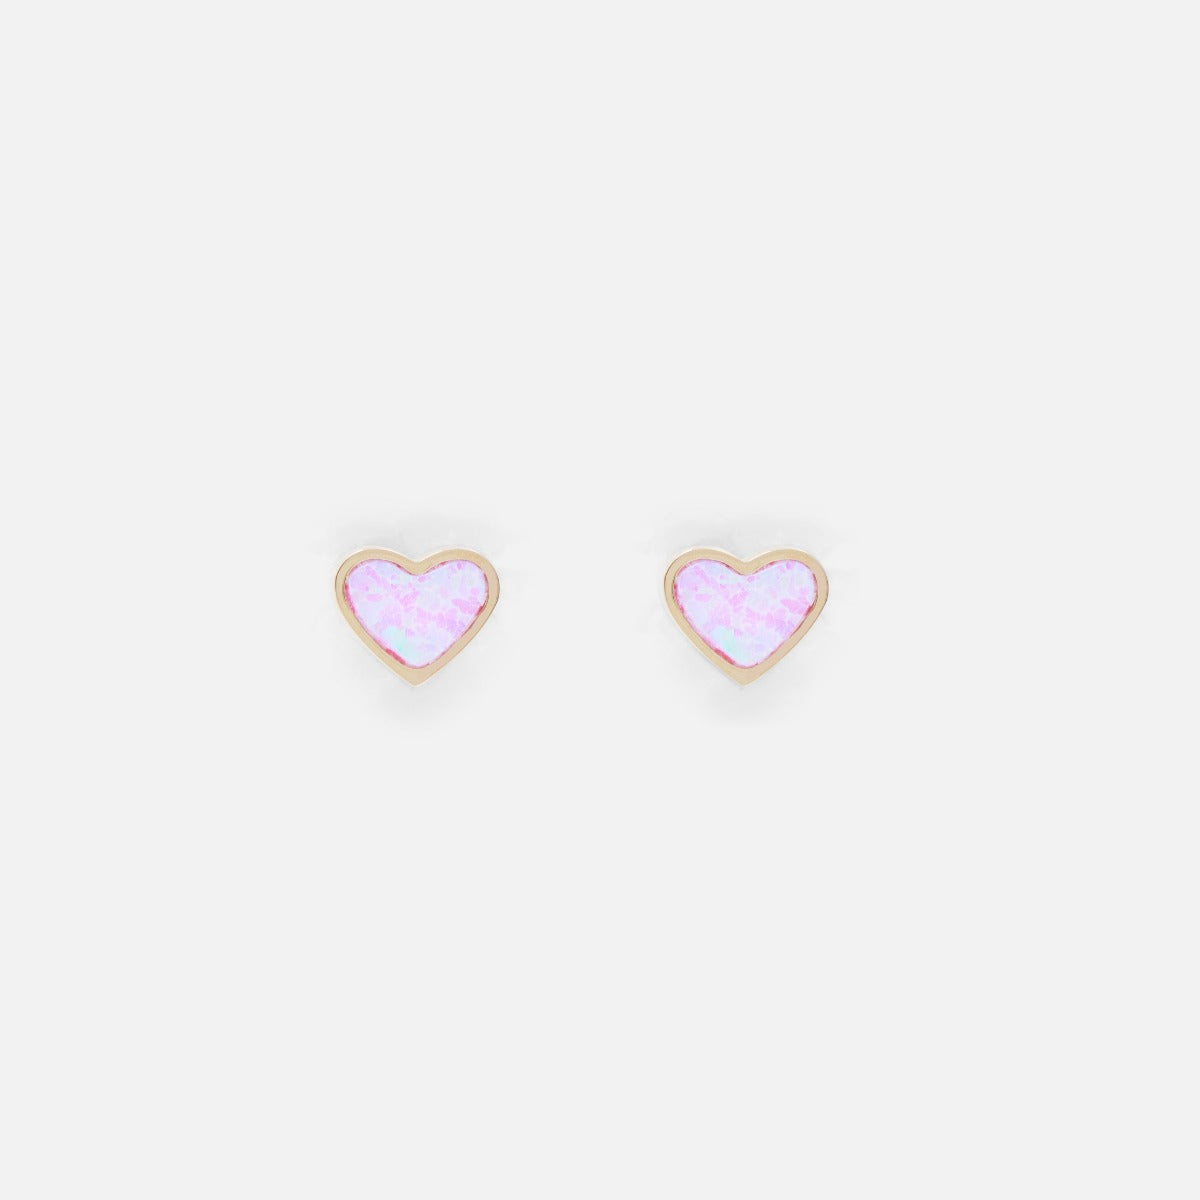 Mini boucles d’oreilles dorées nacre rose en forme de coeur en acier inoxydable